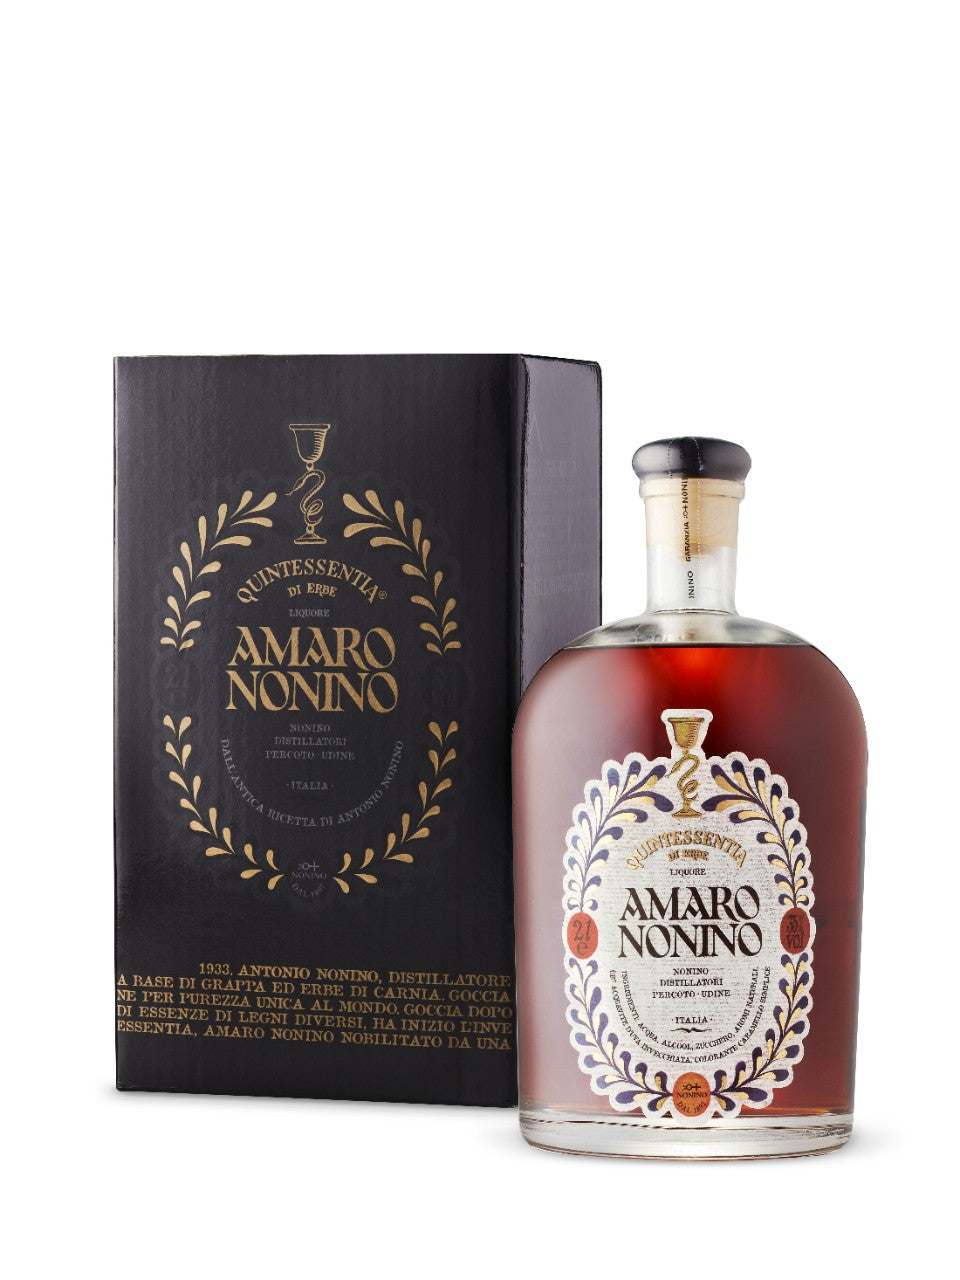 Amaro Nonino Quintessentia 2L bottle